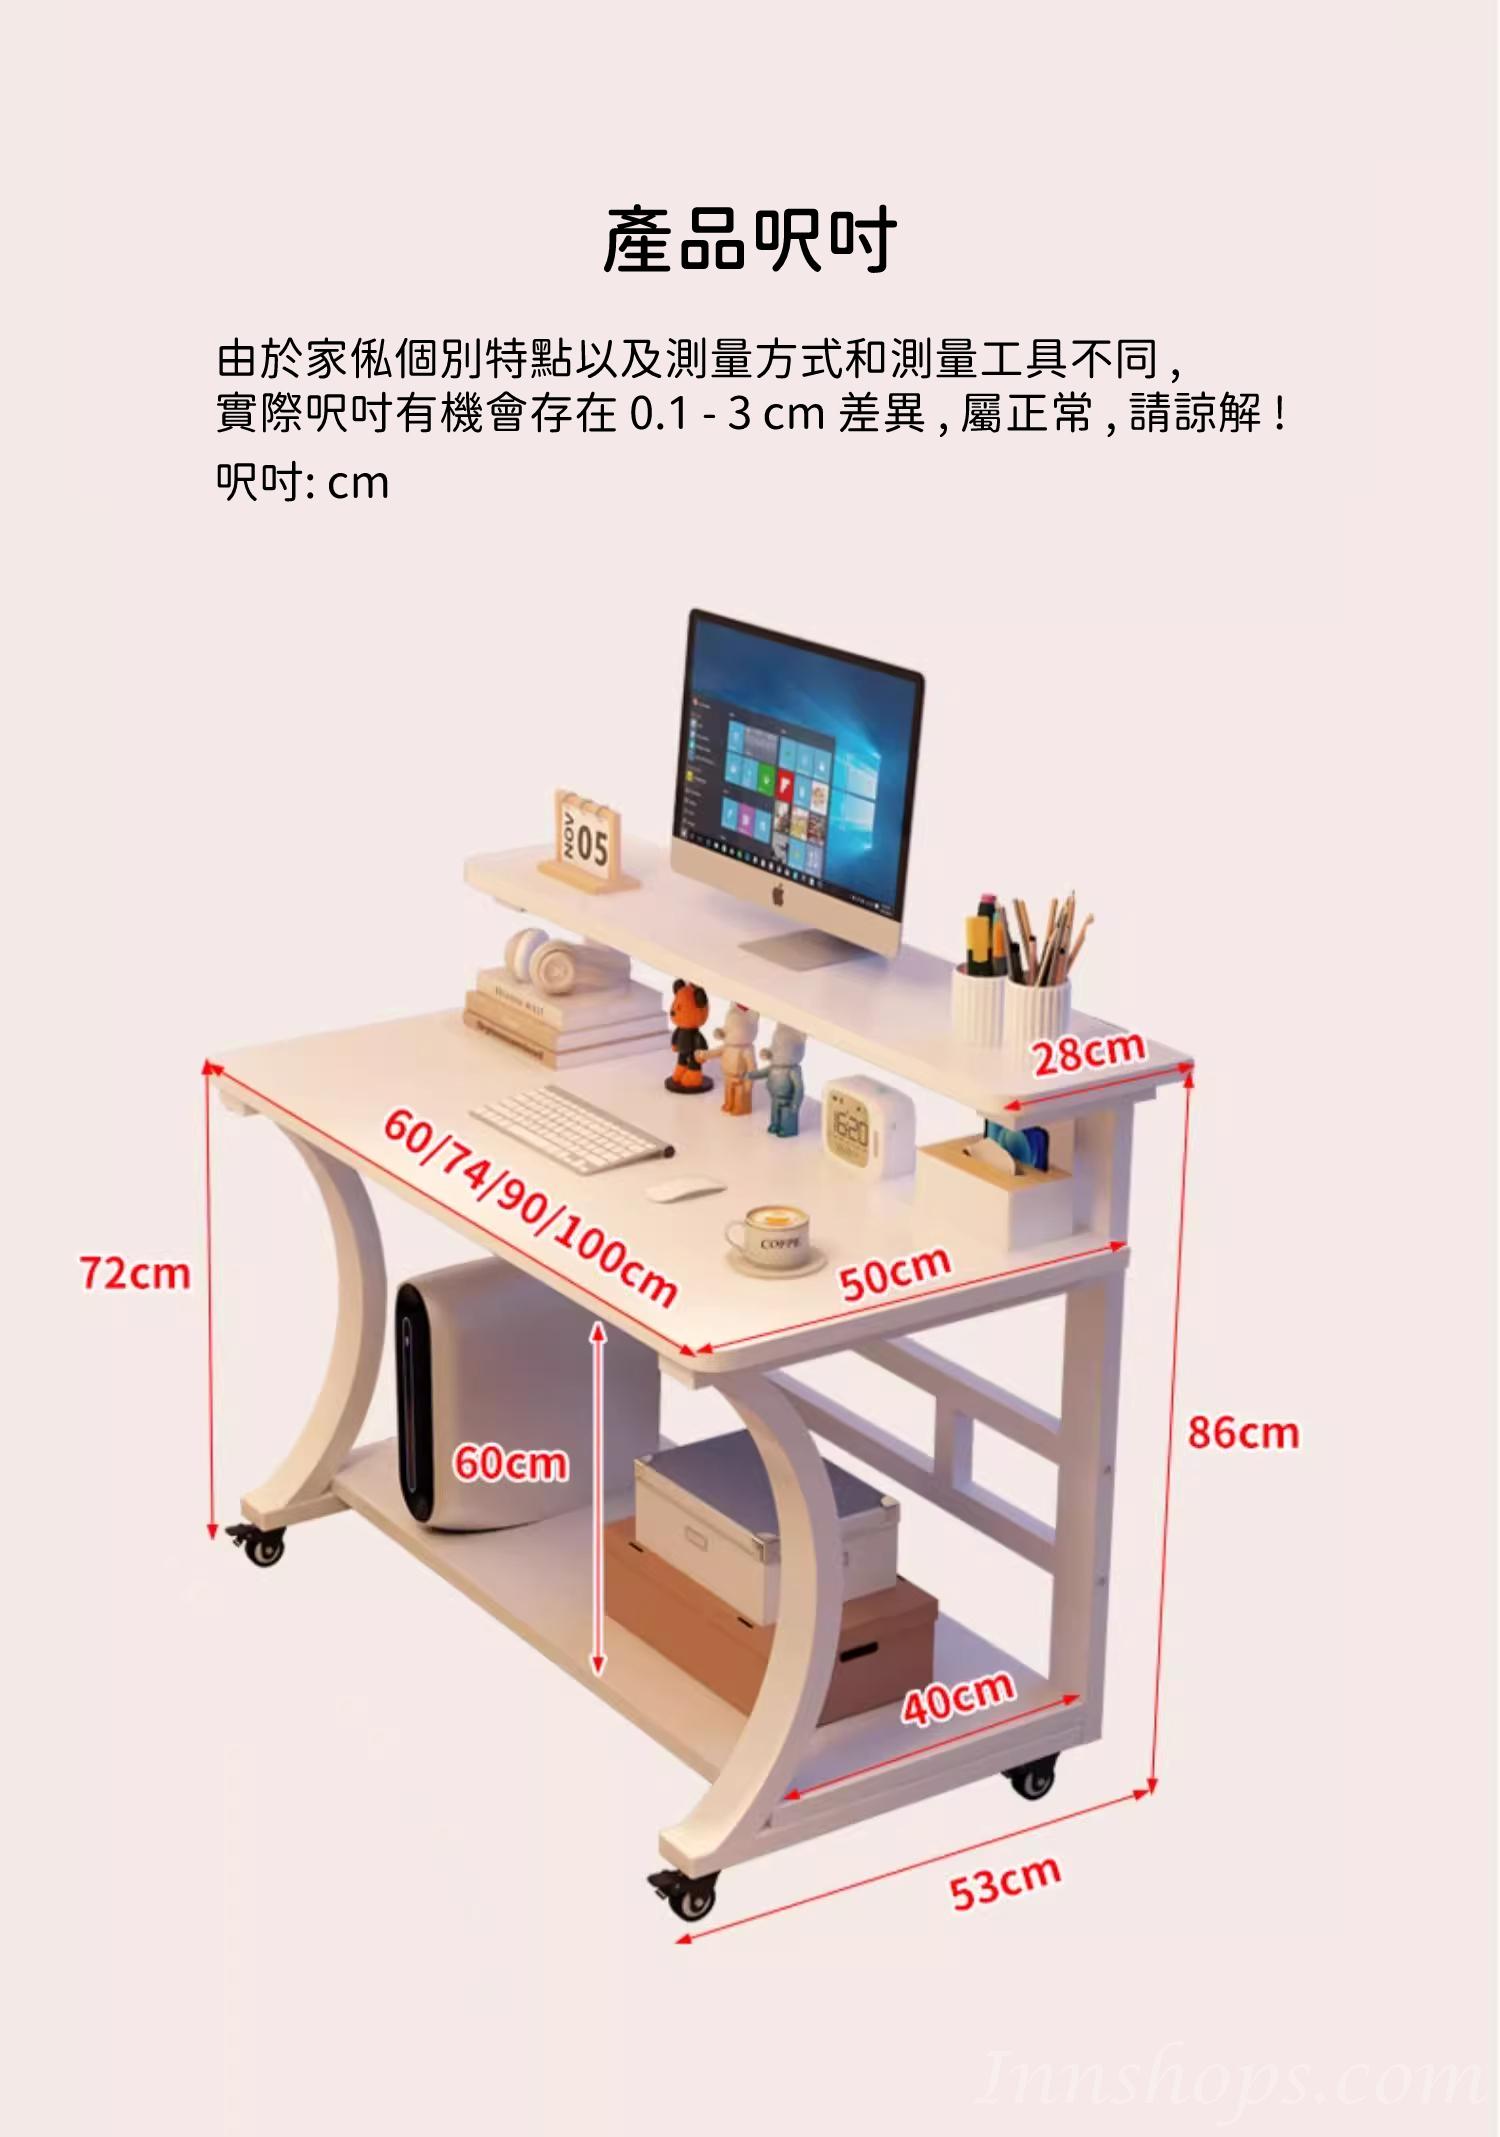 時尚系列 可移動 床邊桌 書桌 電腦枱 60cm/74cm/90cm/100cm*50cm86cm (IS9146)